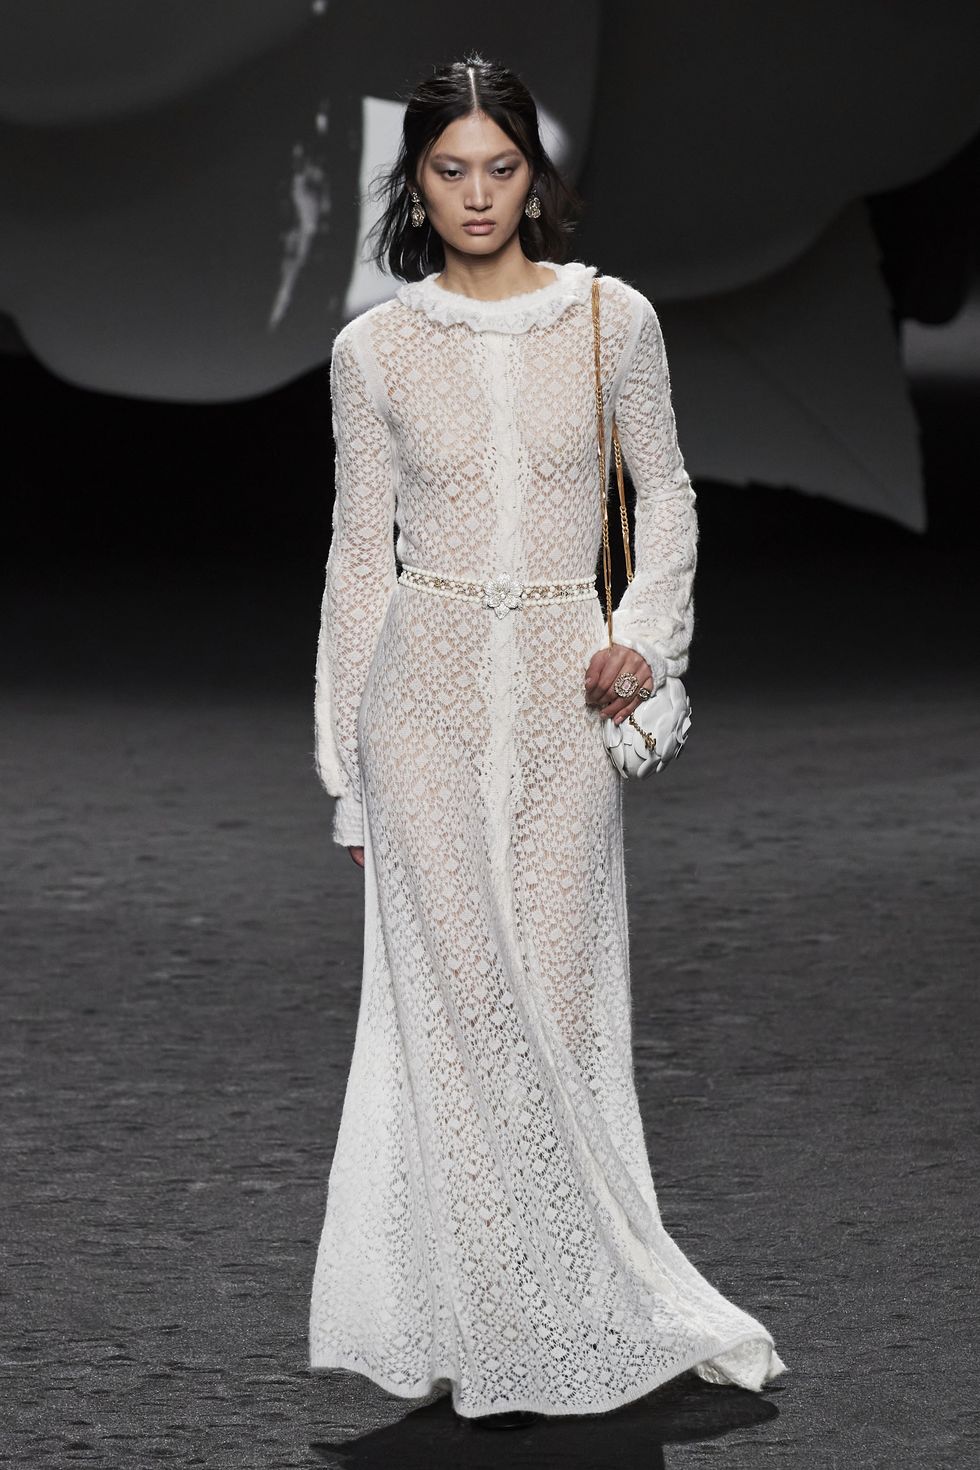 Penélope Cruz, impresionante con el vestido ajustado transparente